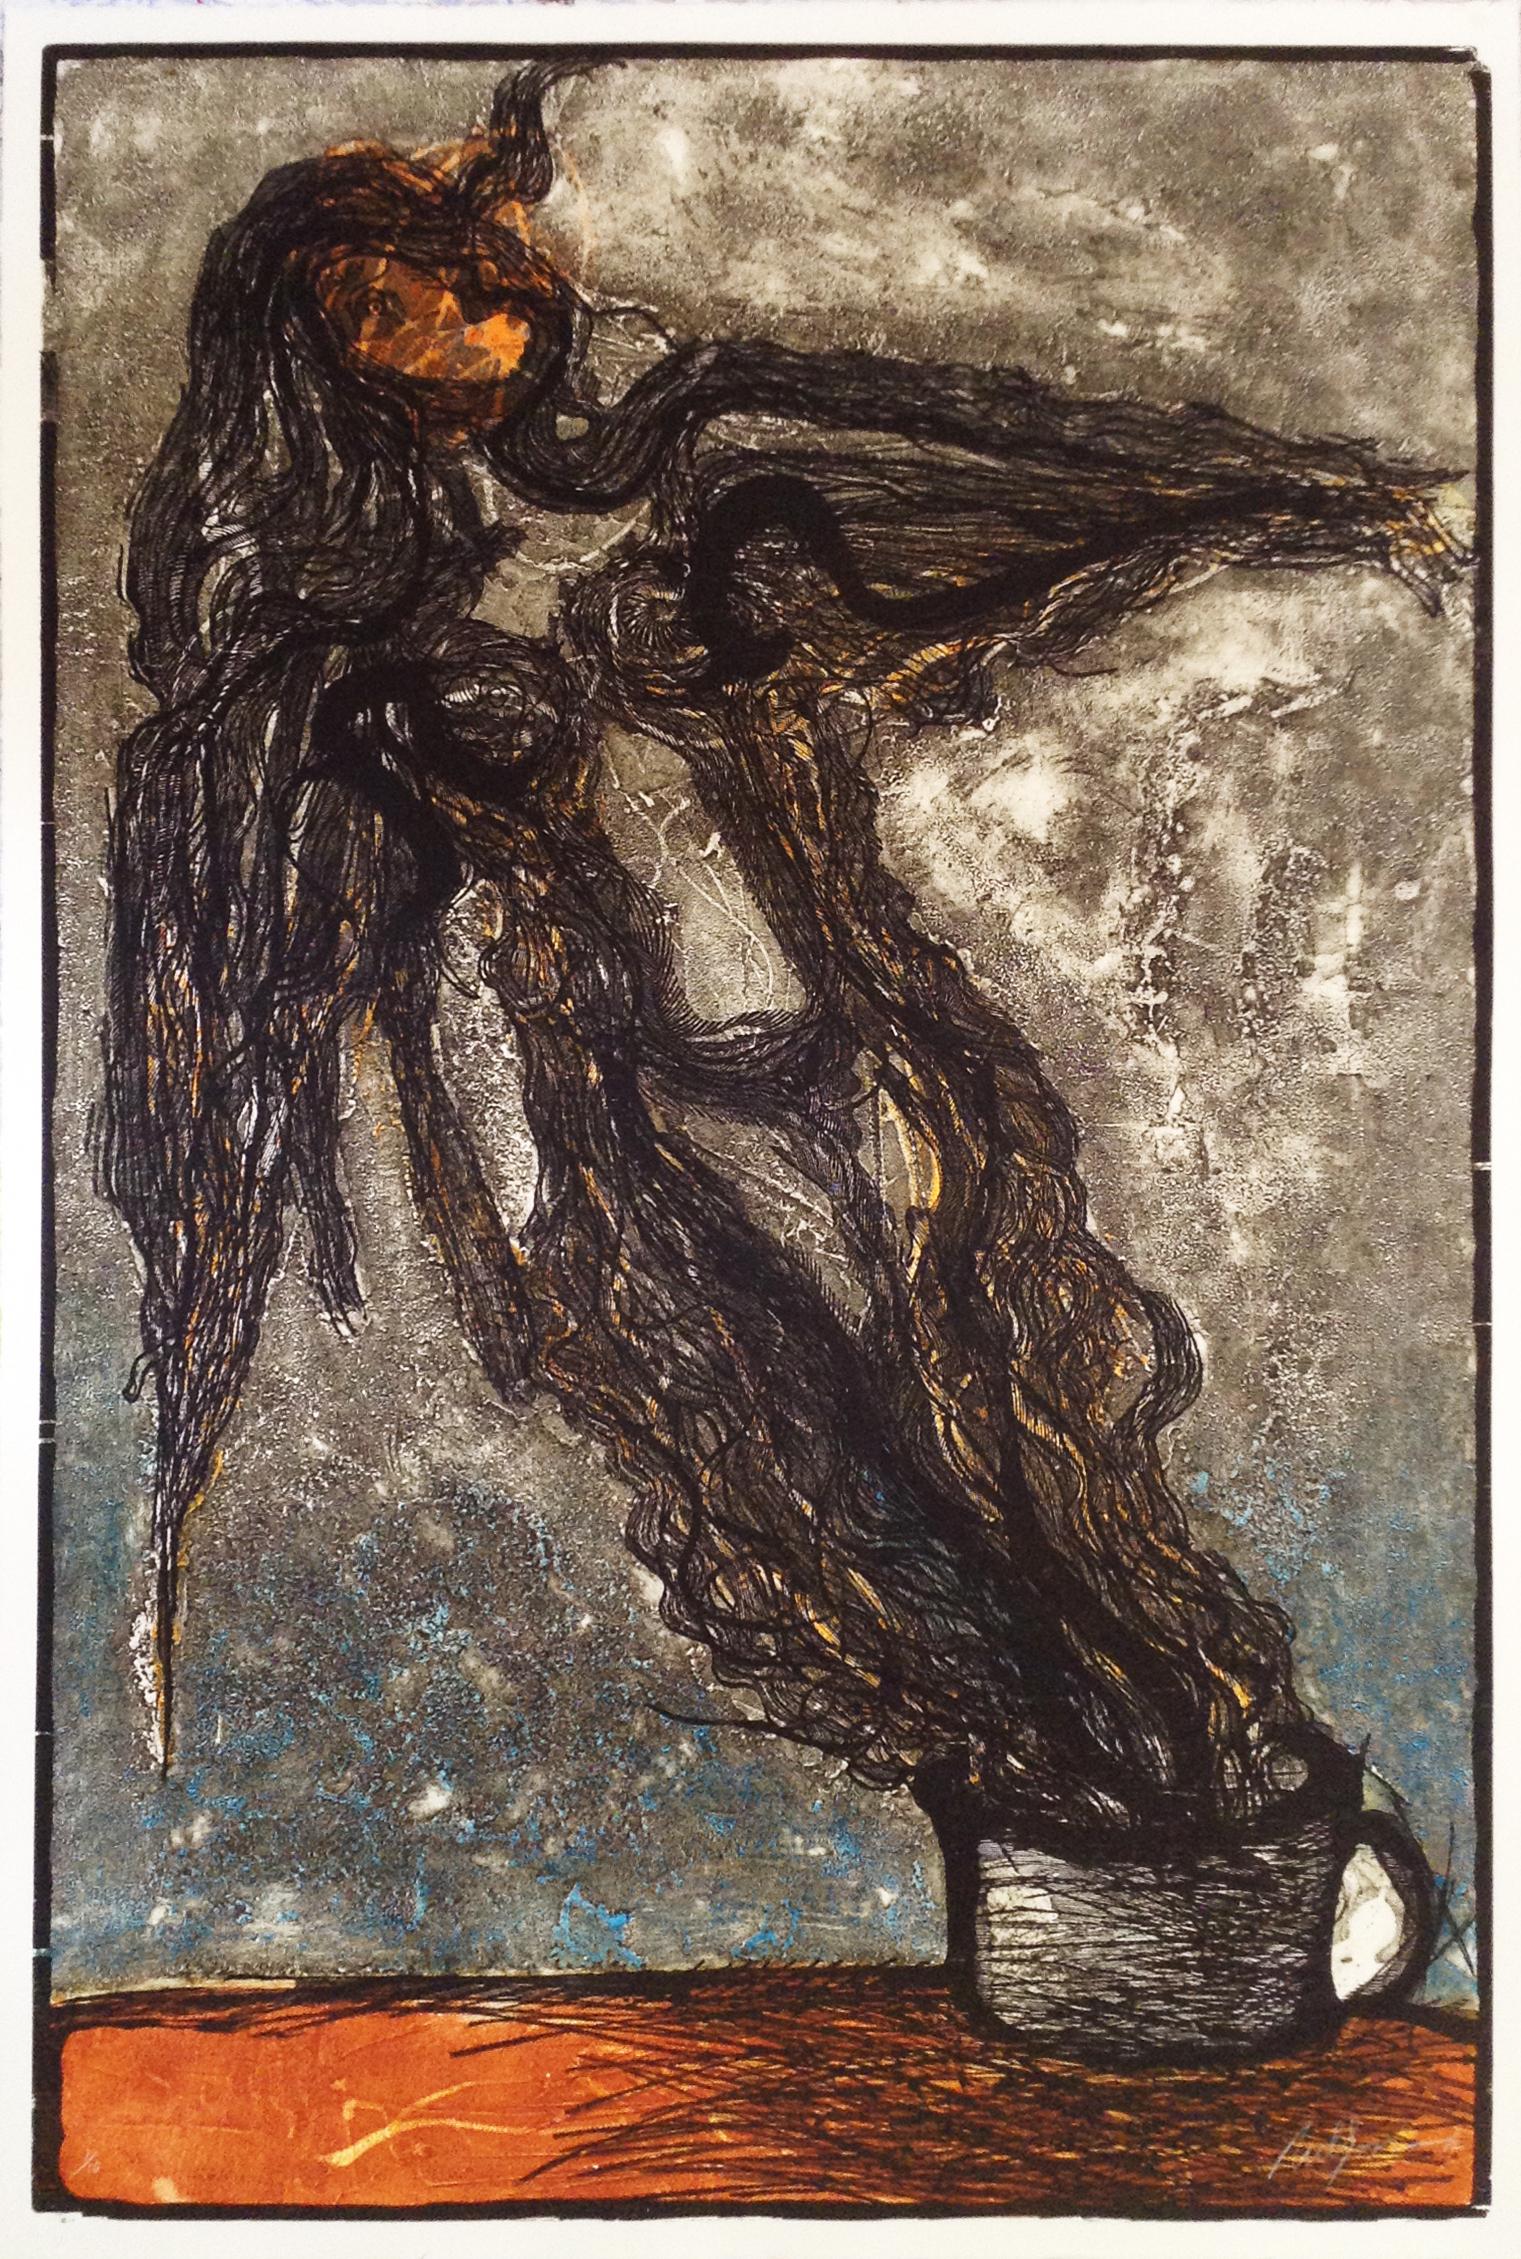 Nelson Dominguez (Kubaner, 1947)
La mujer del café", 2012
Holzschnitt
124.5 x 84.5 cm. (49 x 33.3 in.)
Auflage von 10 Stück
Ungerahmt